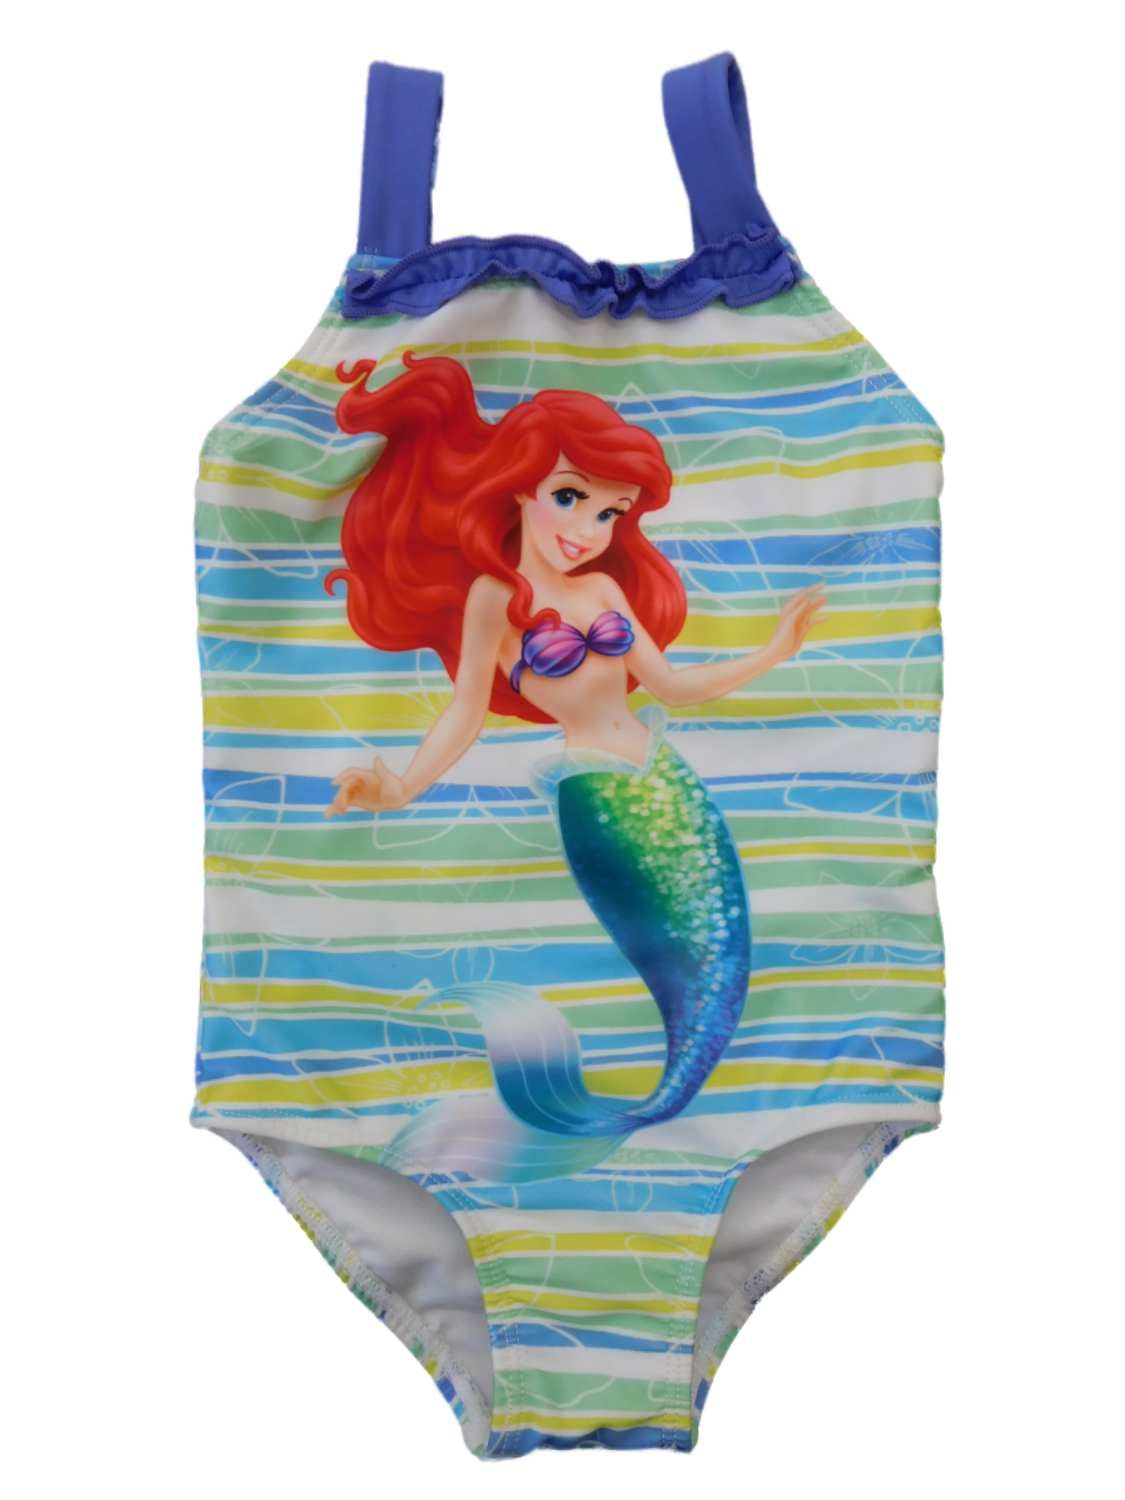 Baby & Girls Mermaids & Stripes Swimming Costume Swimsuit Swimwear 9 Mth 3 Yrs 